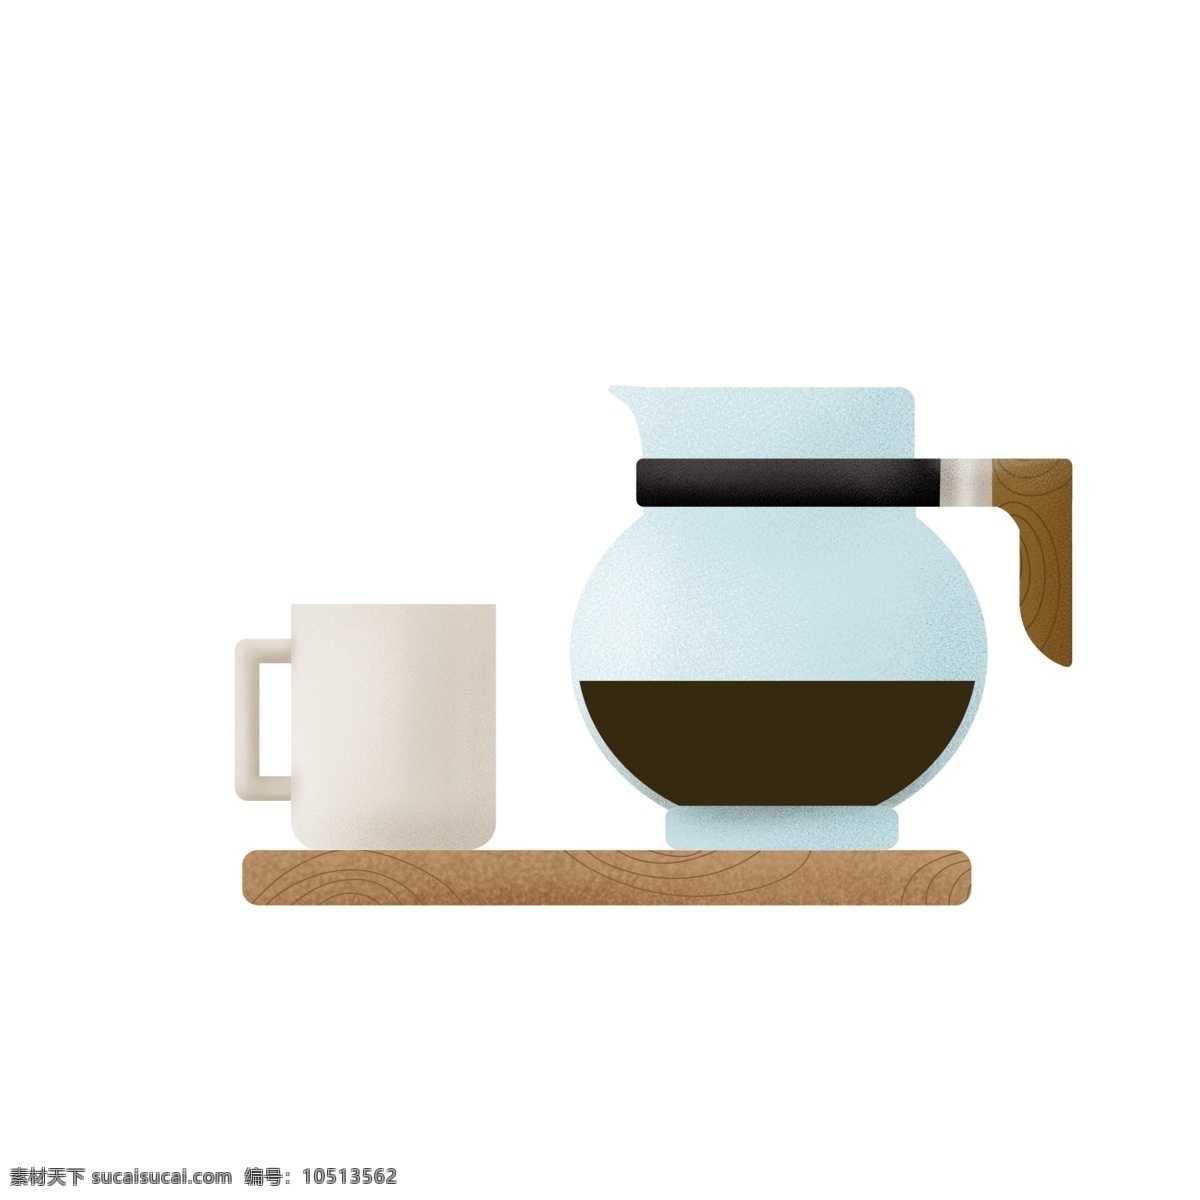 清新 透明 淡 蓝色 咖啡壶 米色 咖啡杯 装饰 图案 淡蓝色 玻璃 木质桌椅 家用 午后时光 下午茶 周末